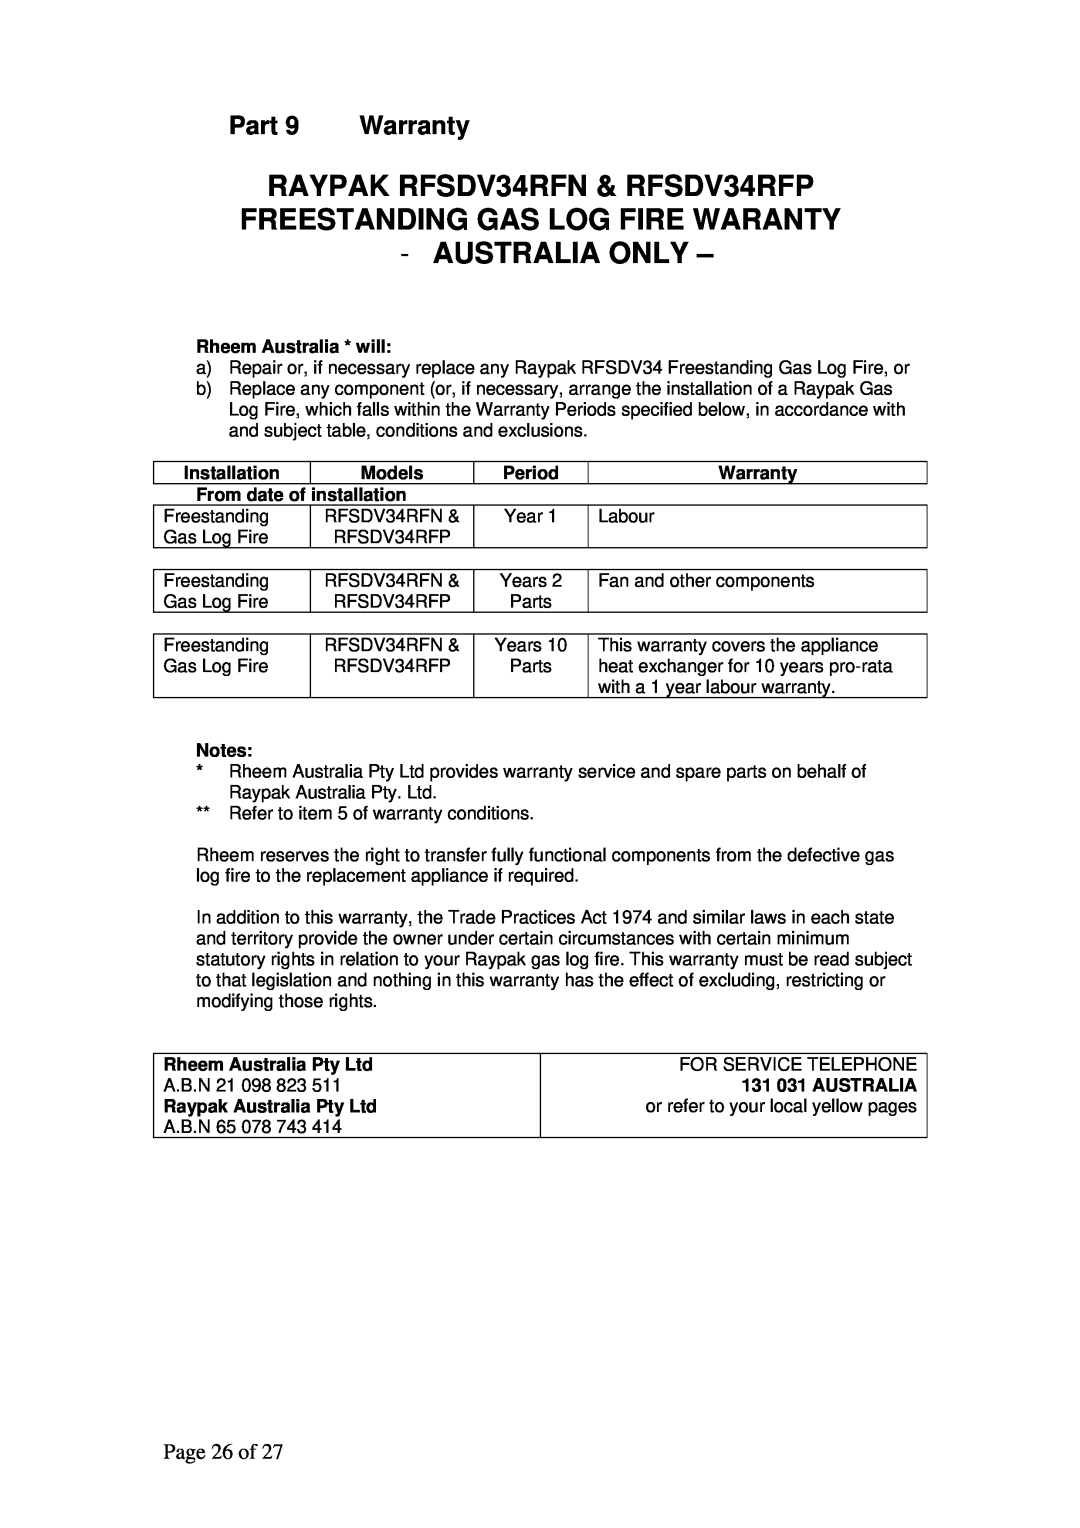 Raypak RFSDV34RFNAU, RFSDV34RFPAU manual Australia Only, Part, Warranty, Page 26 of 